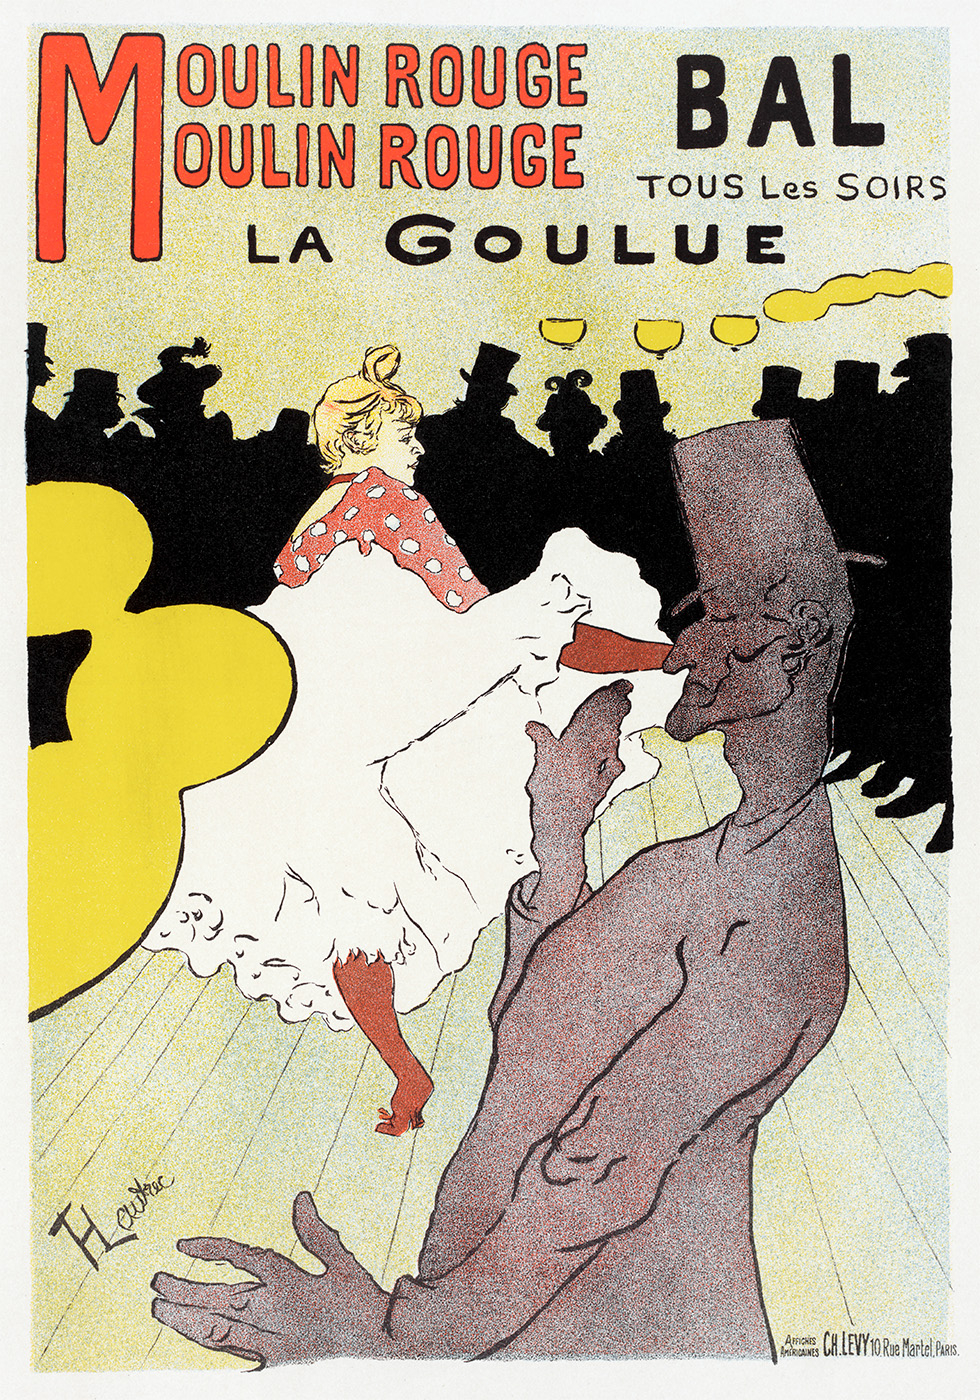 Se Affische pour le Moulin Rouge af Plakatwerket hos Illux.dk